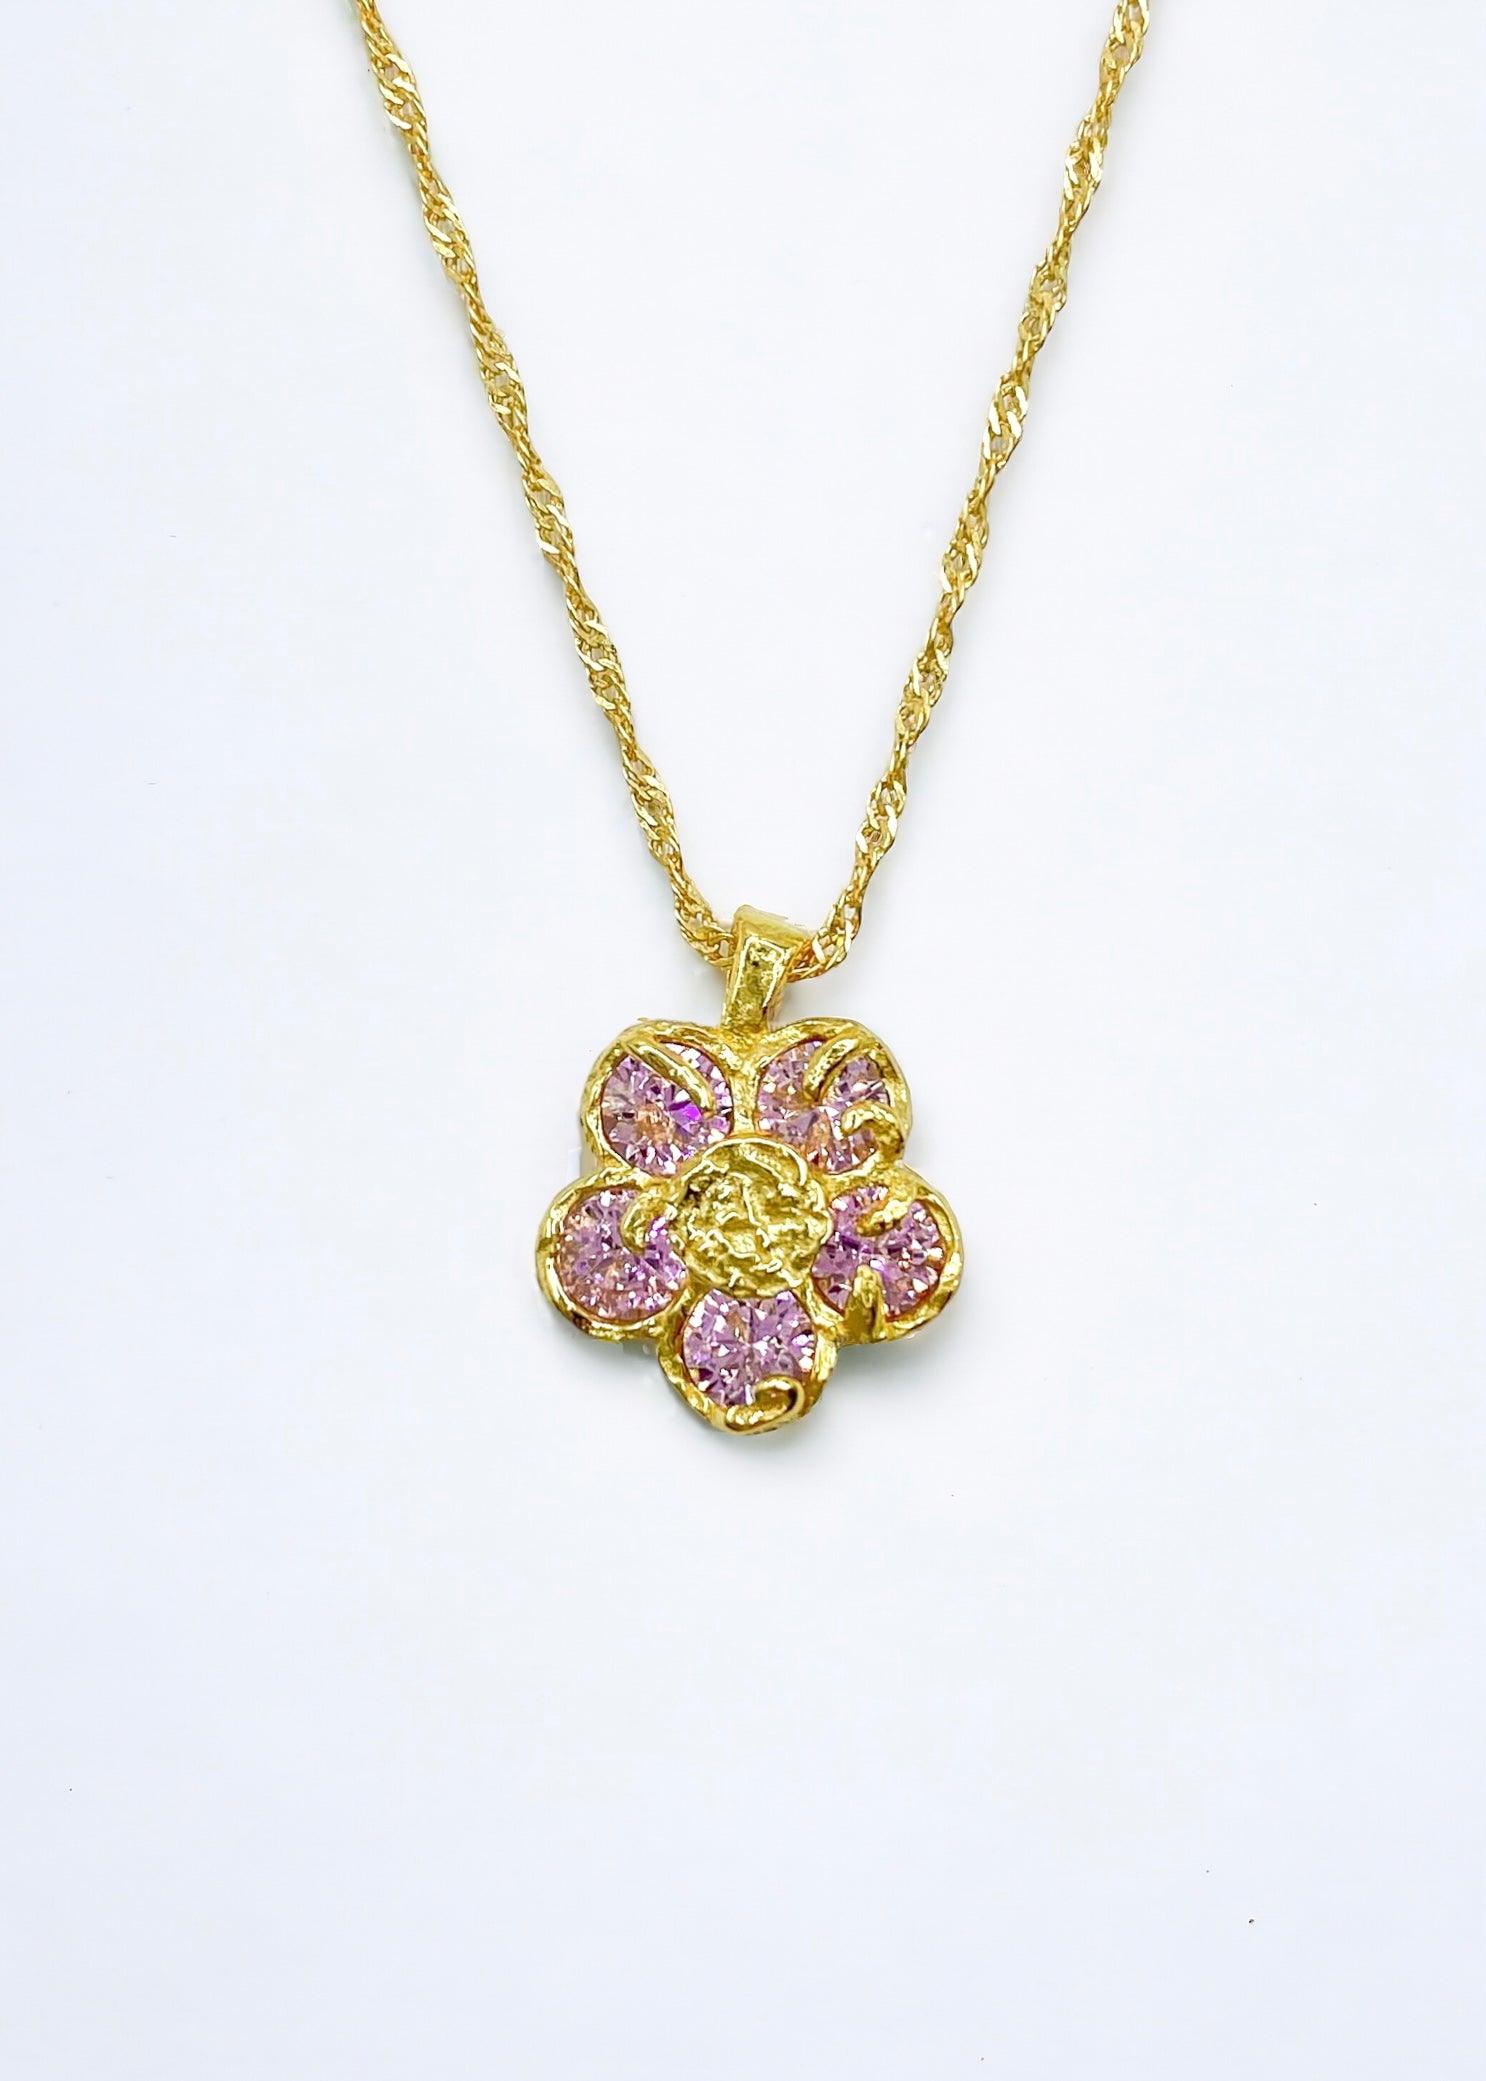 Gullblomsterkjede med rosa krystaller plassert på en elegant hvit bakgrunn.